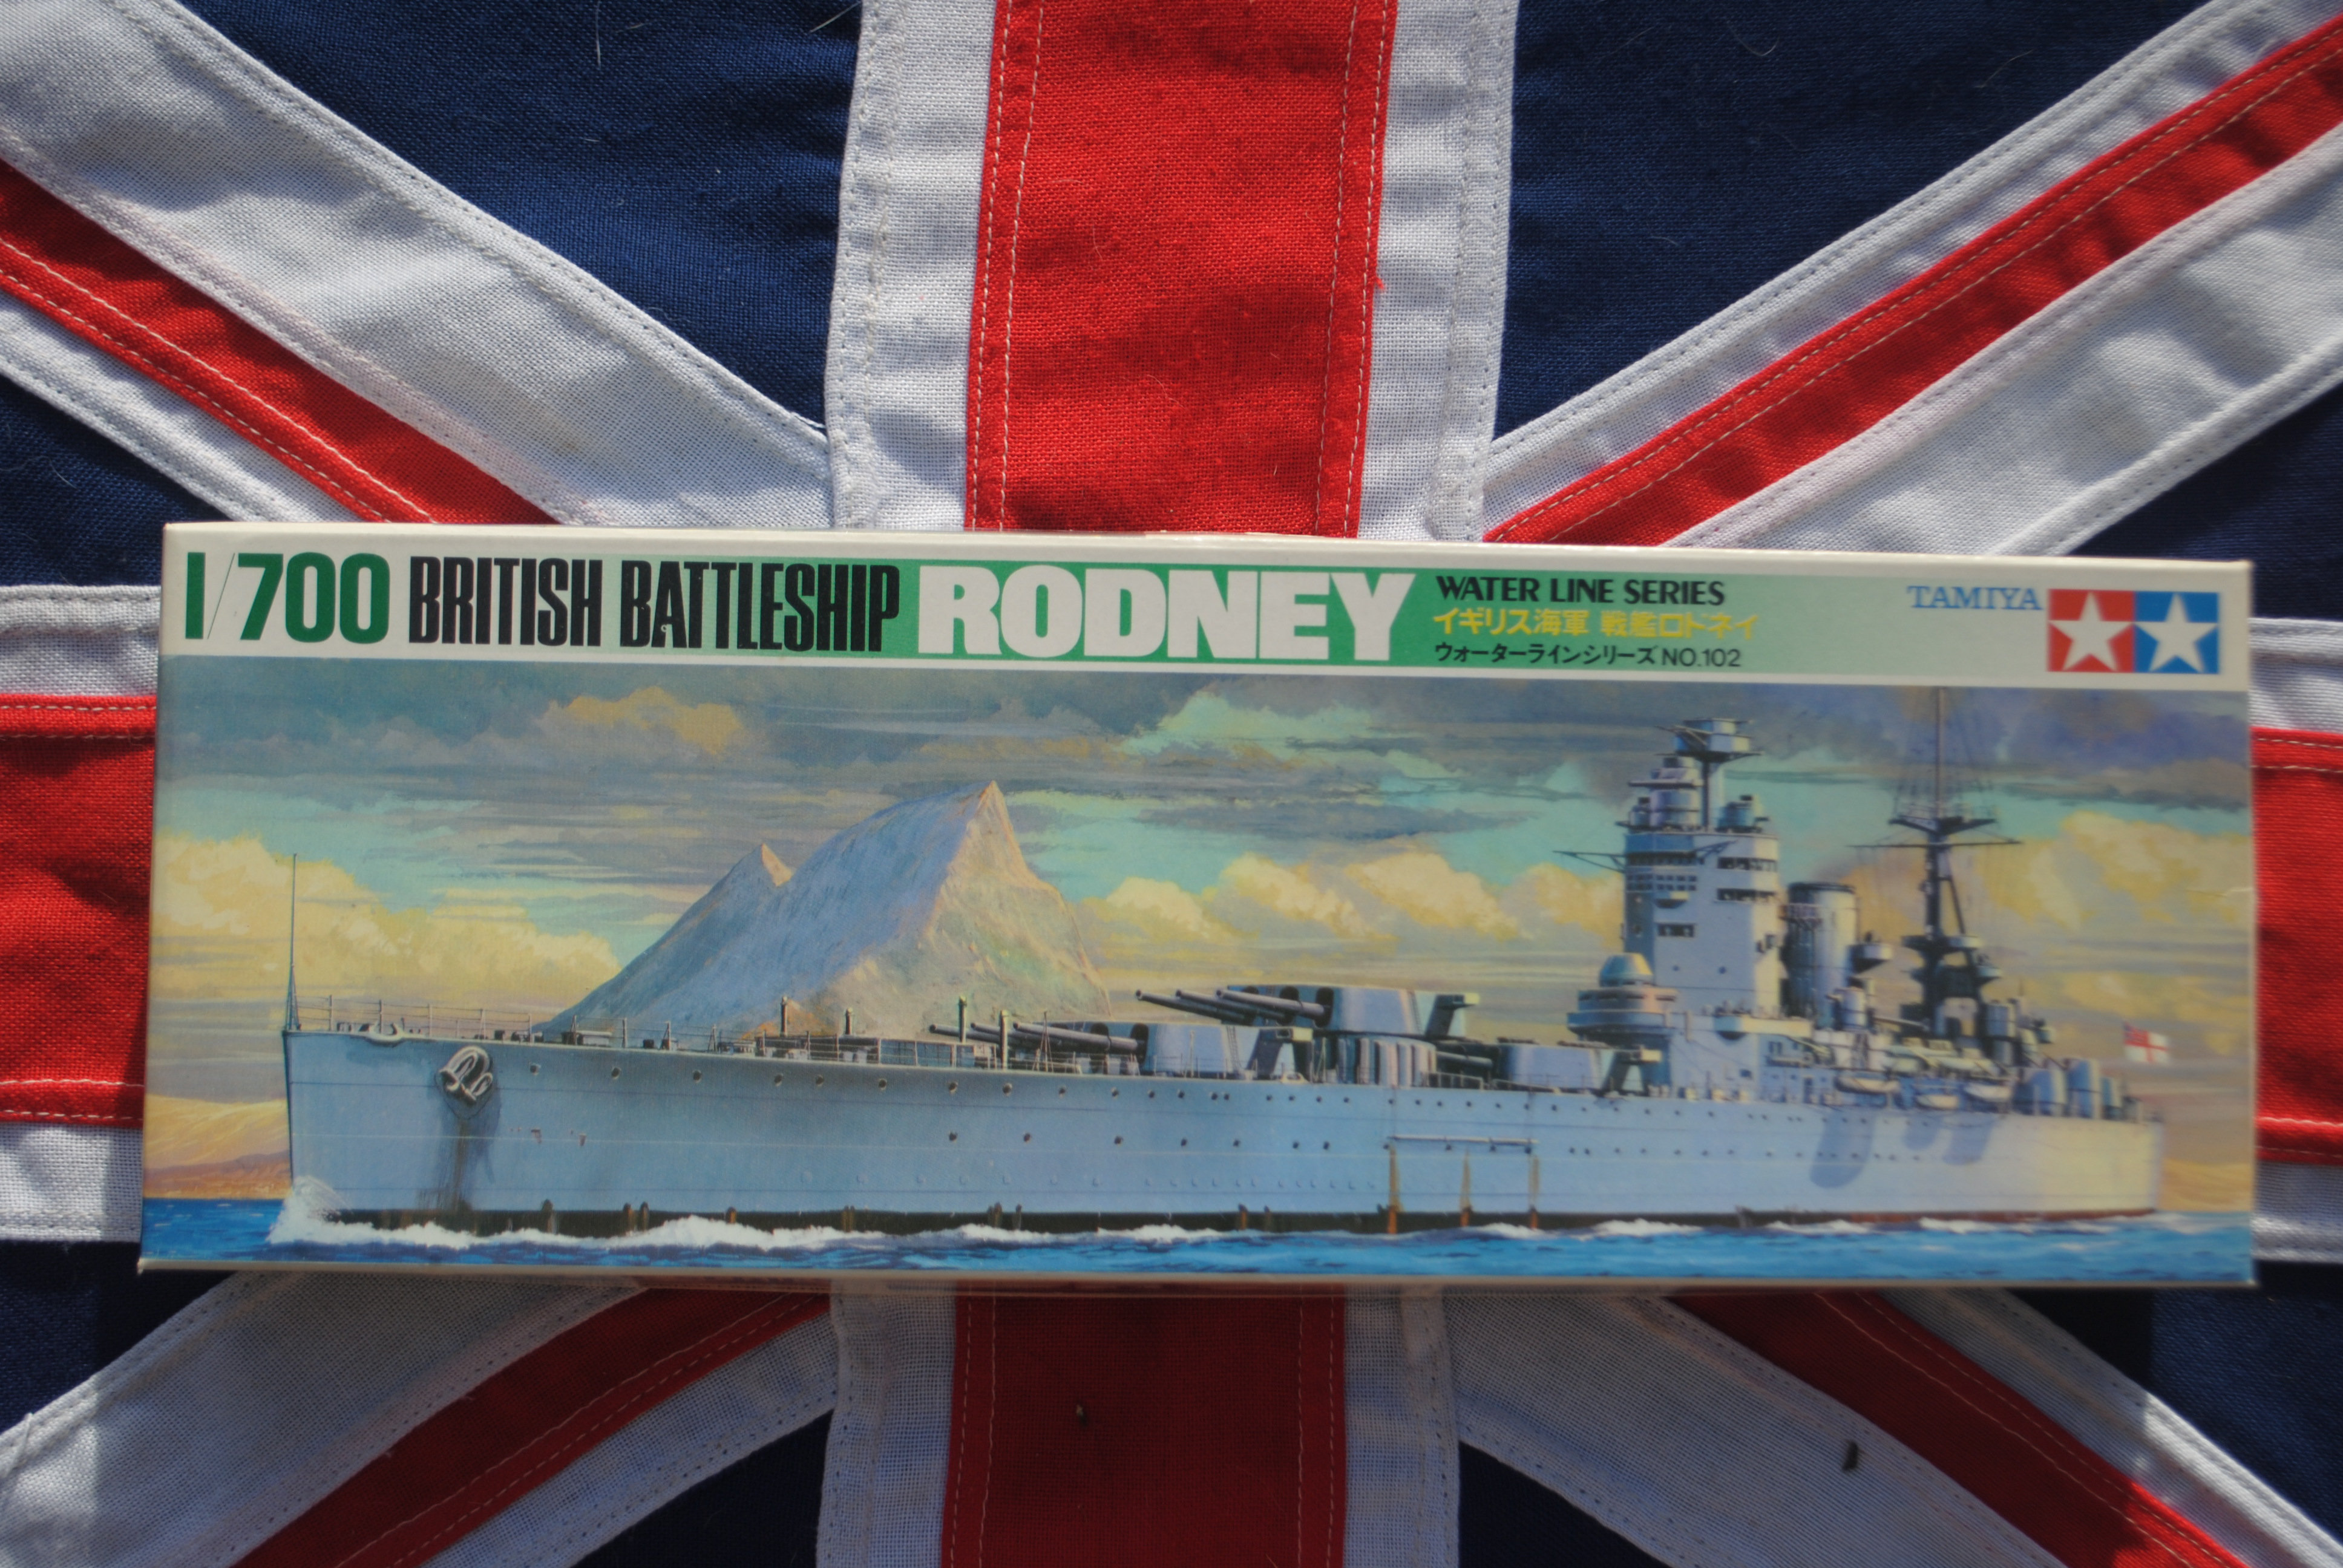 Tamiya WL.B102 British Battleship HMS Rodney Waterline Series